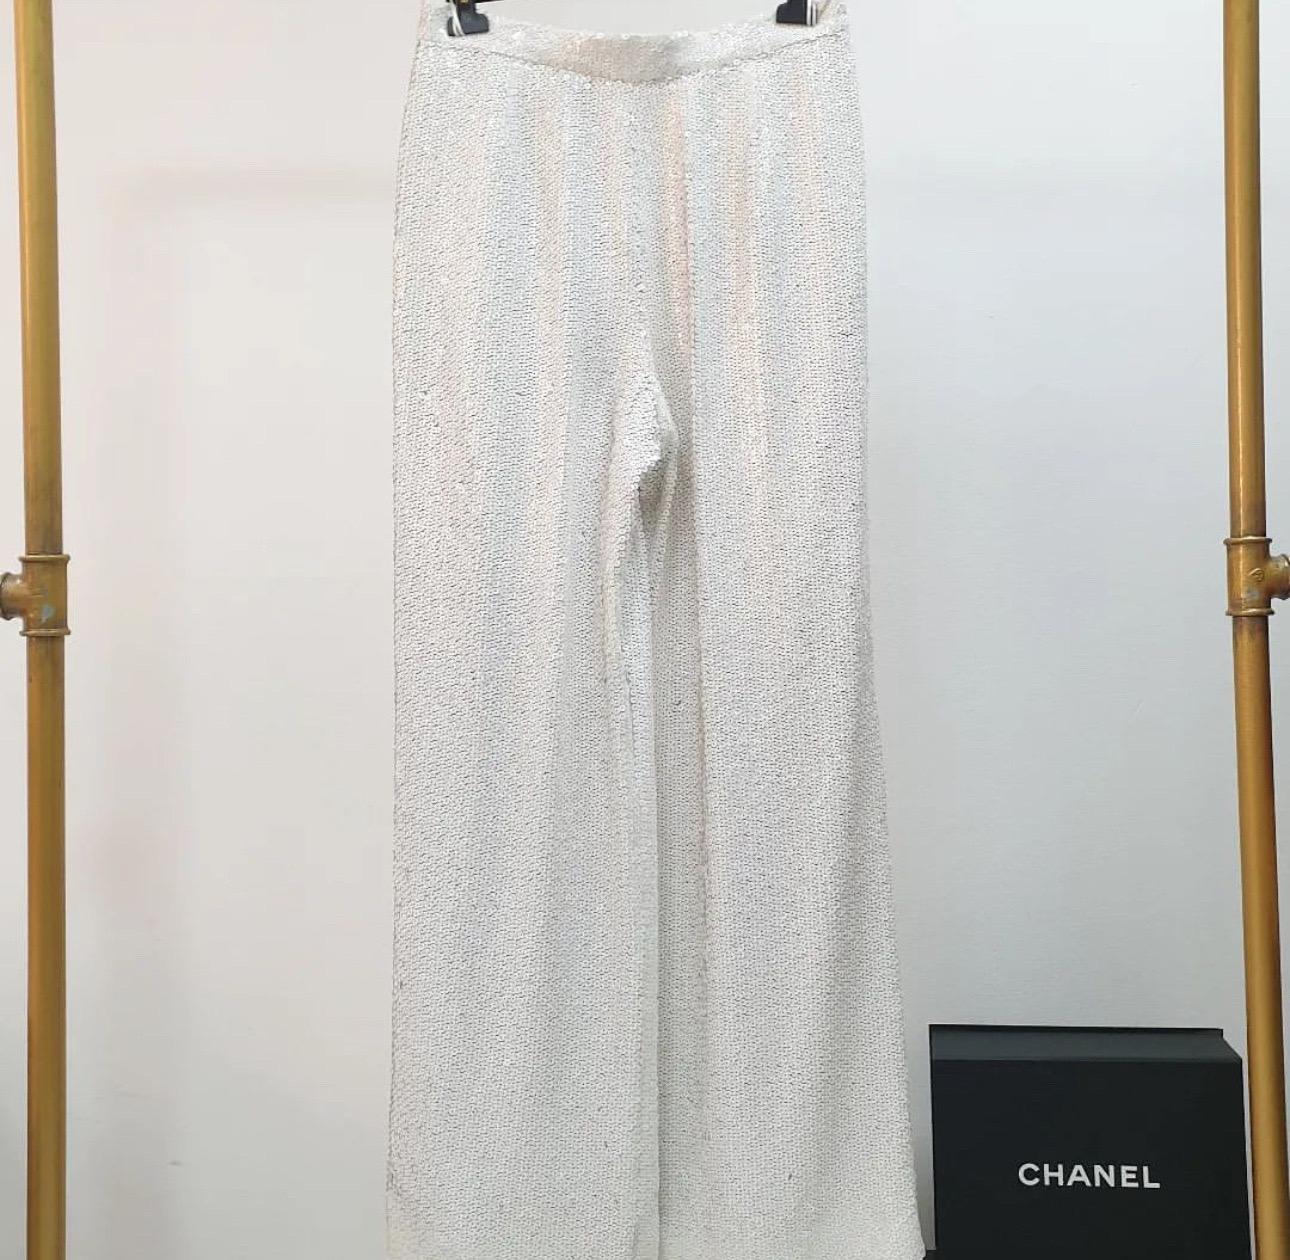 Wunderschöne weiße Chanel-Hose mit Paillettenverzierung, wie sie auf der MET GALA an Kirsten Stewart zu sehen war. 
Vom Laufsteg der Herbst 2019 ''In The Snow'' Collection by Kalr Lagerfeld. 
Ähnliche Hosen in der aktuellen Collection'S gehen mit